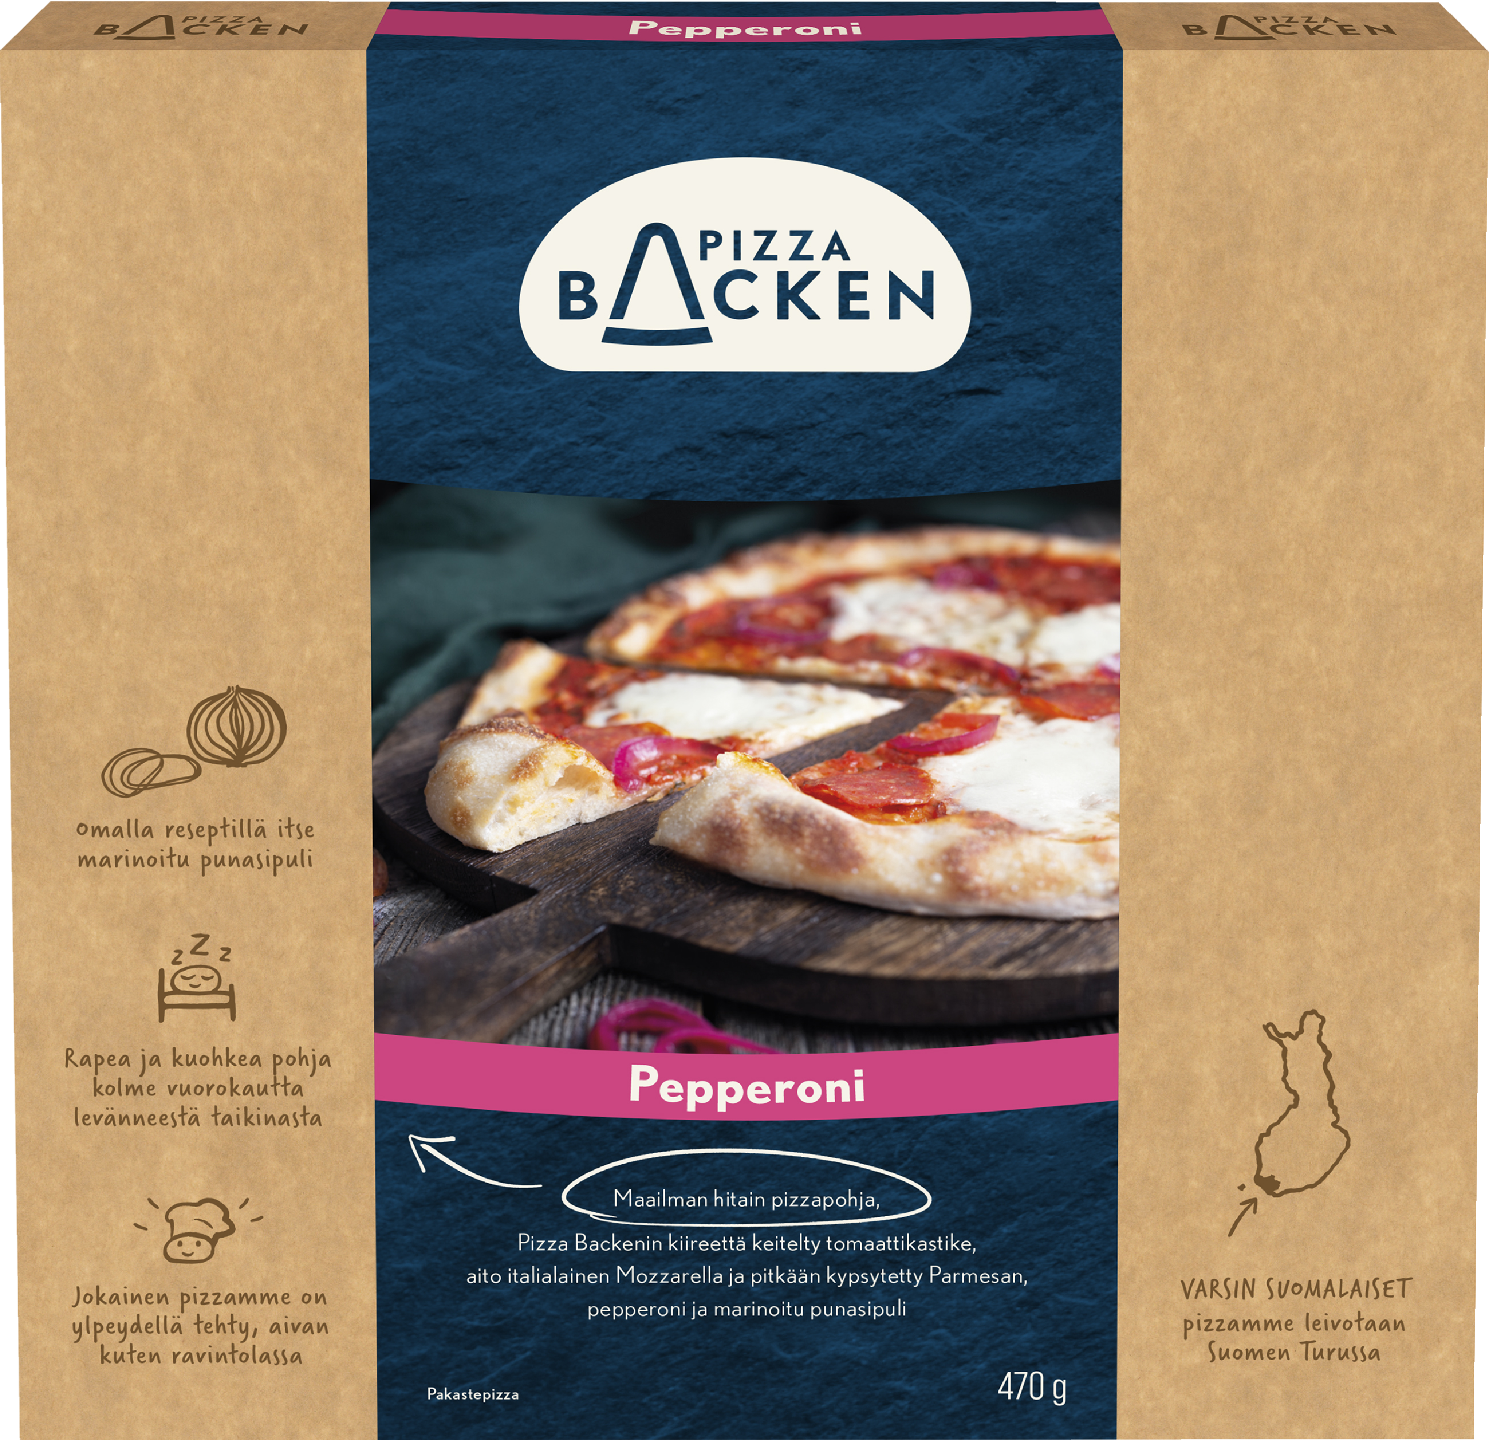 Pizza Backen Pepperonipizza 470g pakaste